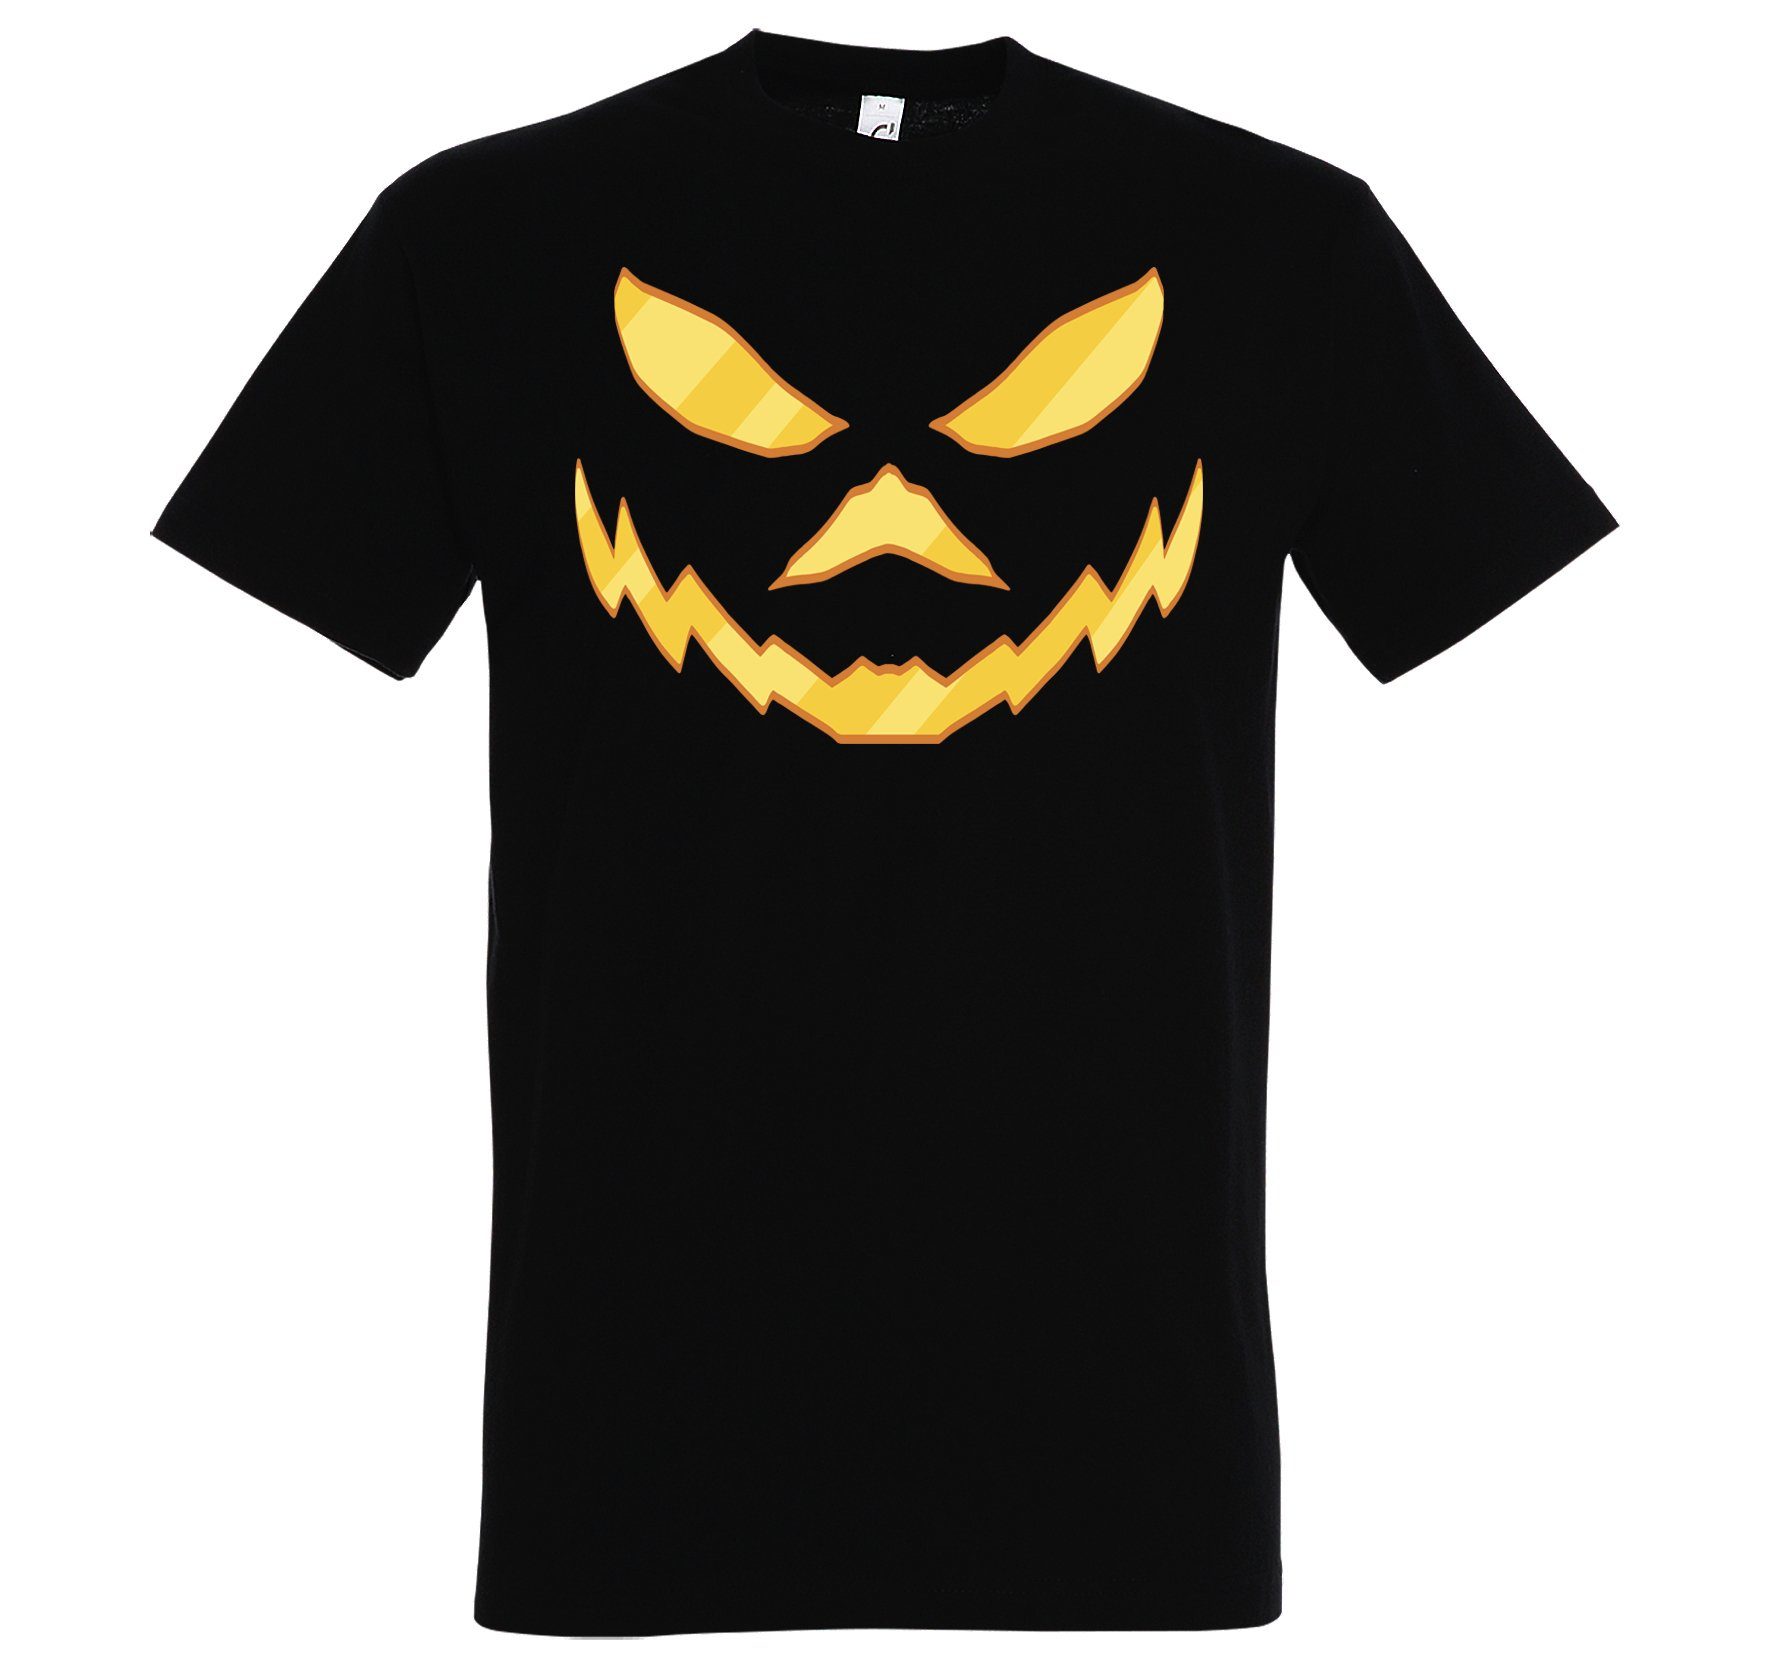 Youth Designz Print-Shirt Halloween Herren T-Shirt Horror Joker Face Fun-Look mit modischem Print Aufdruck Schwarz